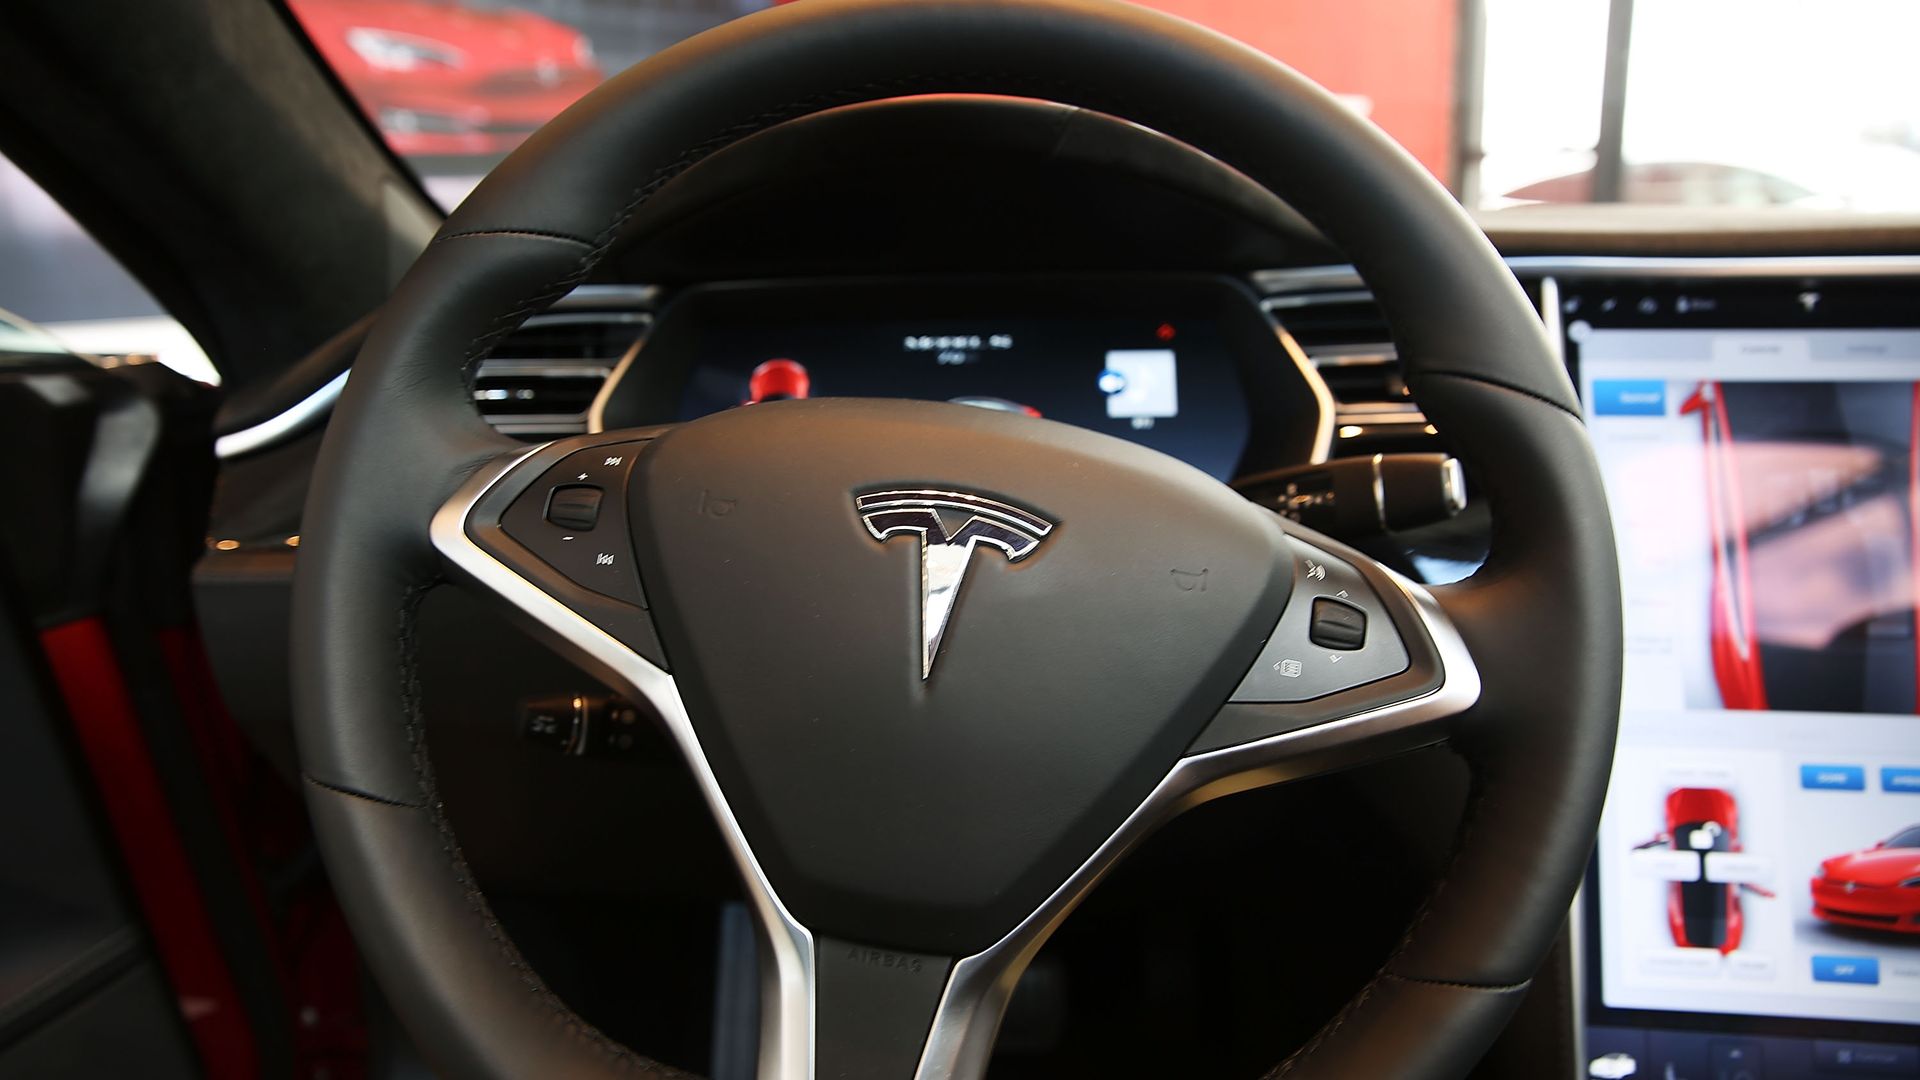 Image of a Tesla steering wheel